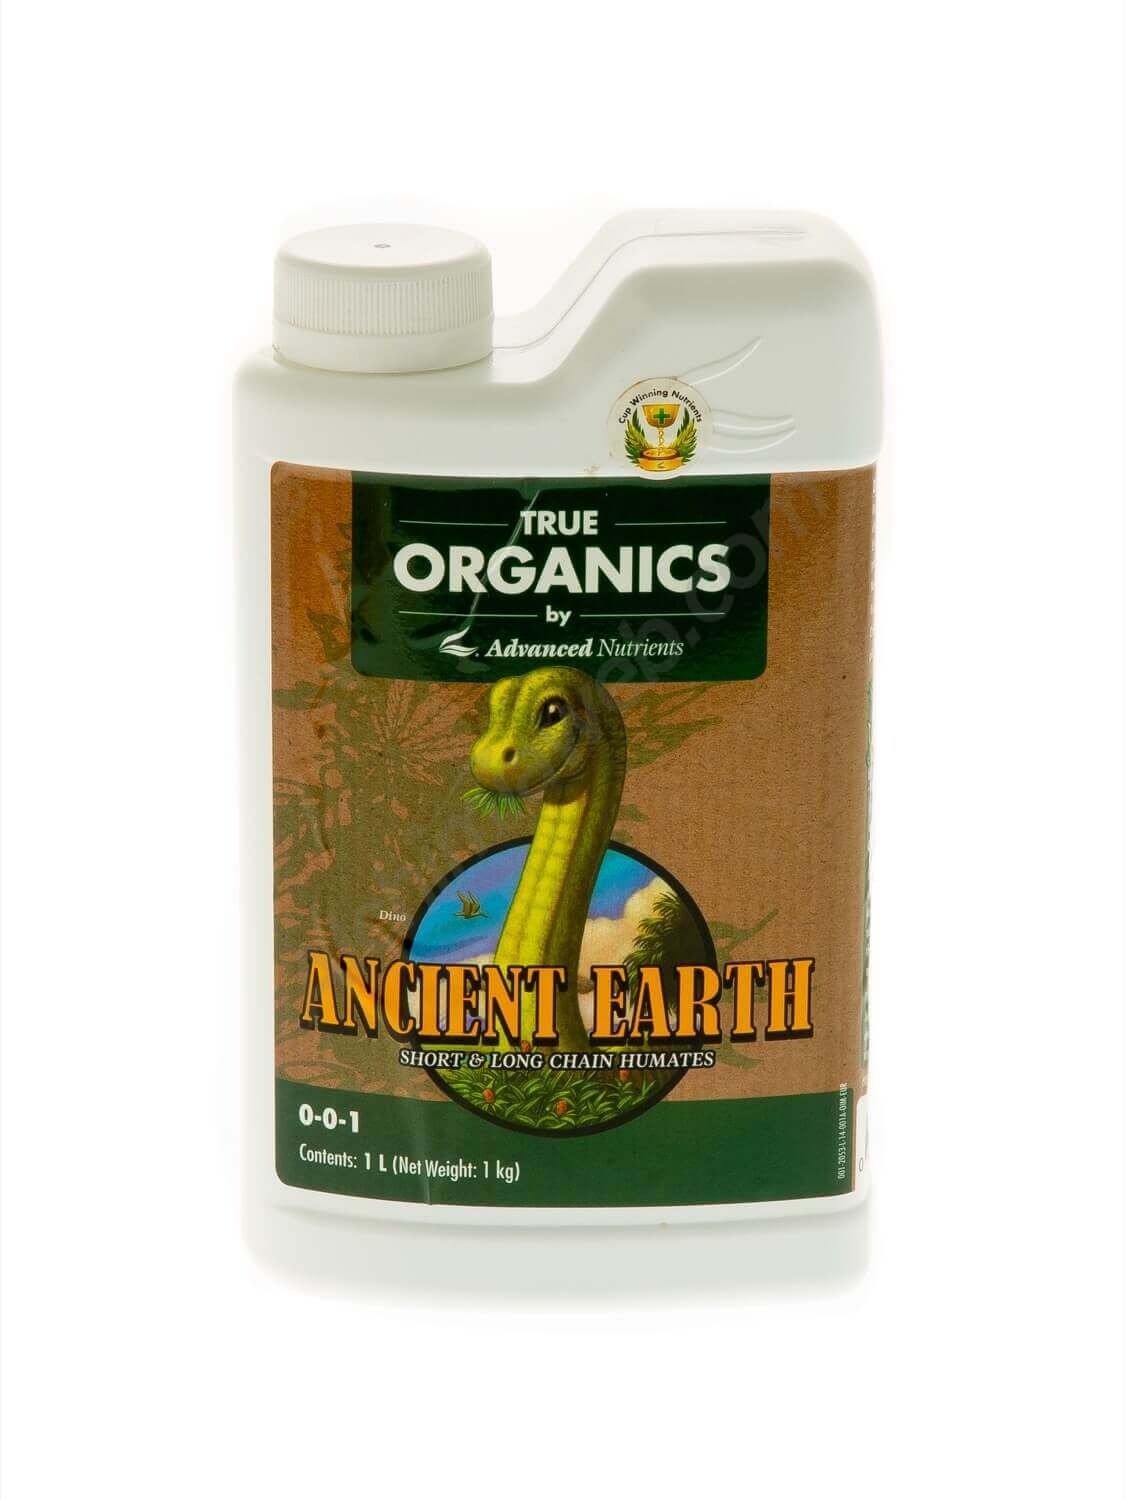 True Organics Ancient Earth